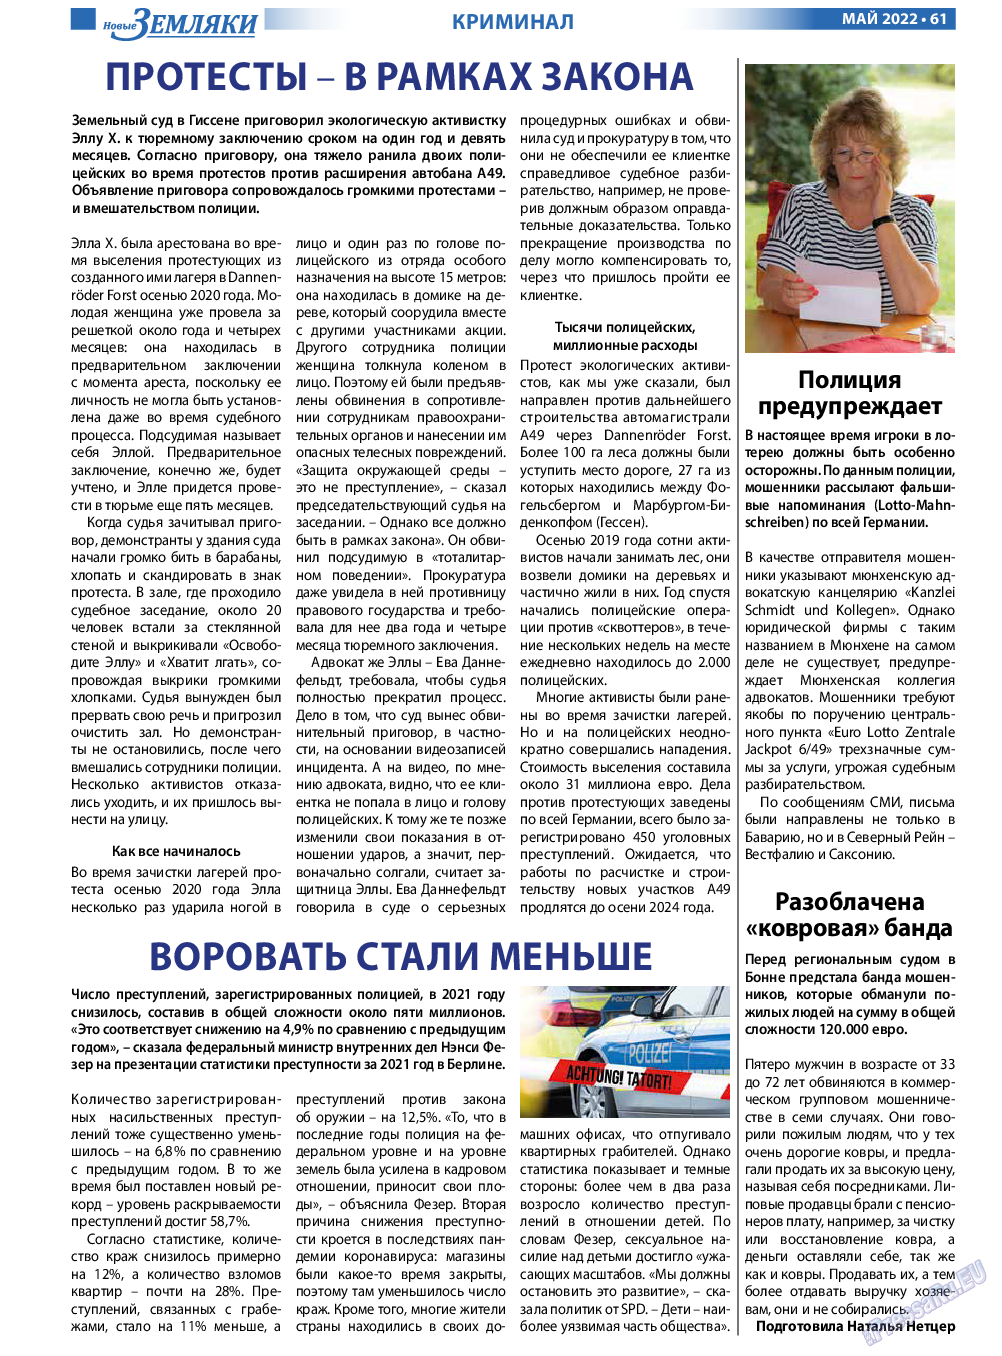 Новые Земляки, газета. 2022 №5 стр.61